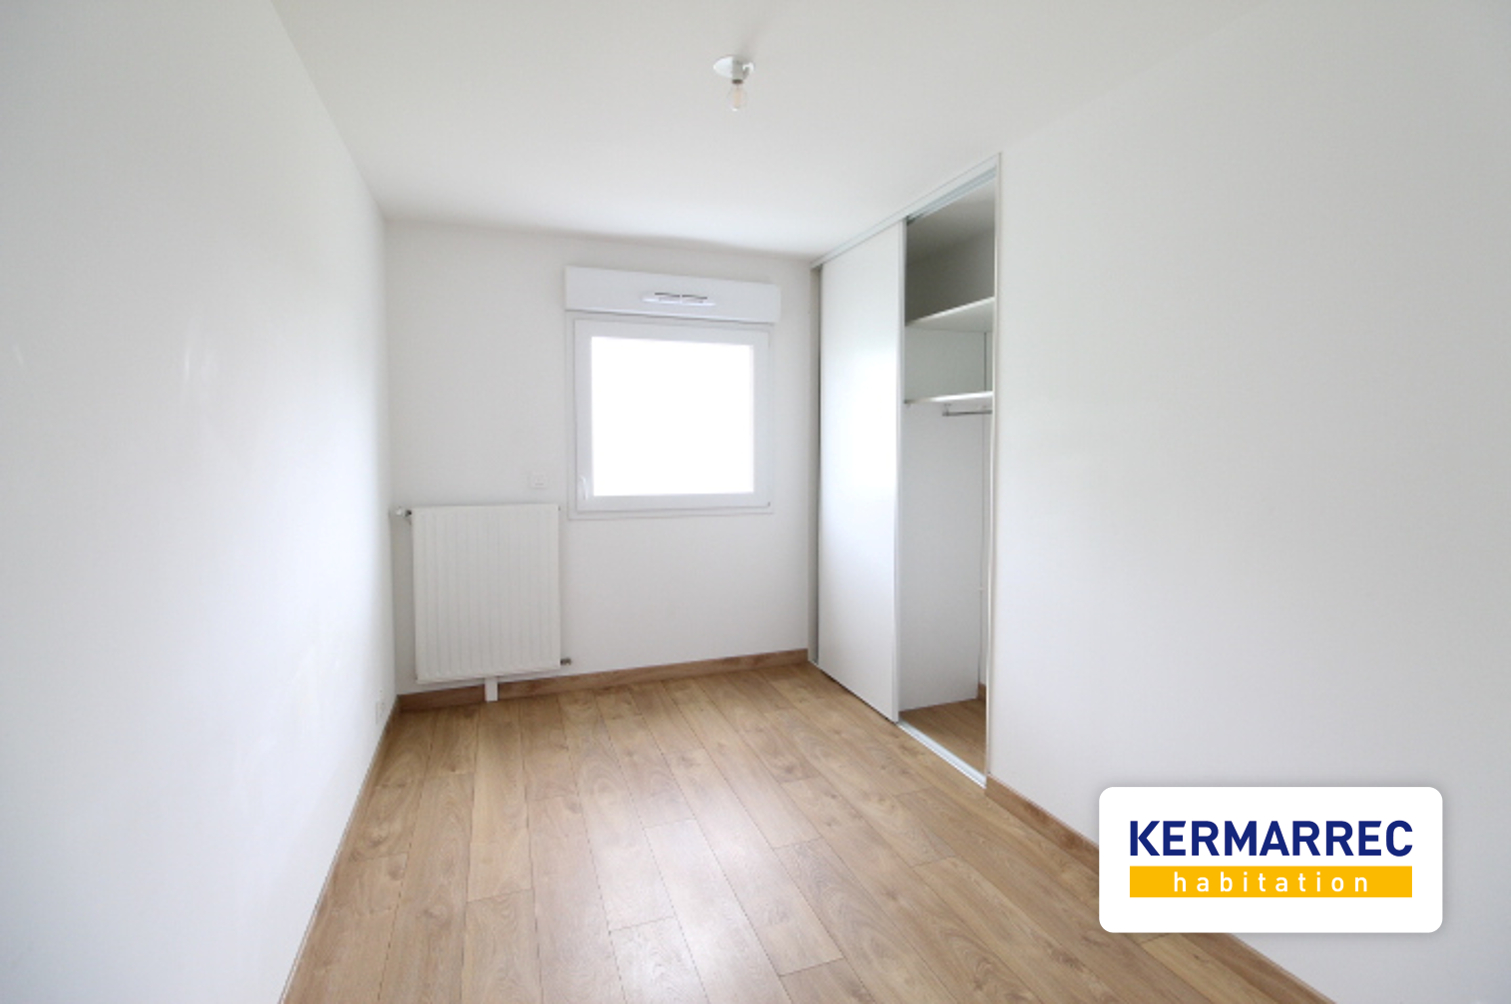 Appartement 3 pièces - 66 m² environ - 55094466i.jpg | Kermarrec Habitation